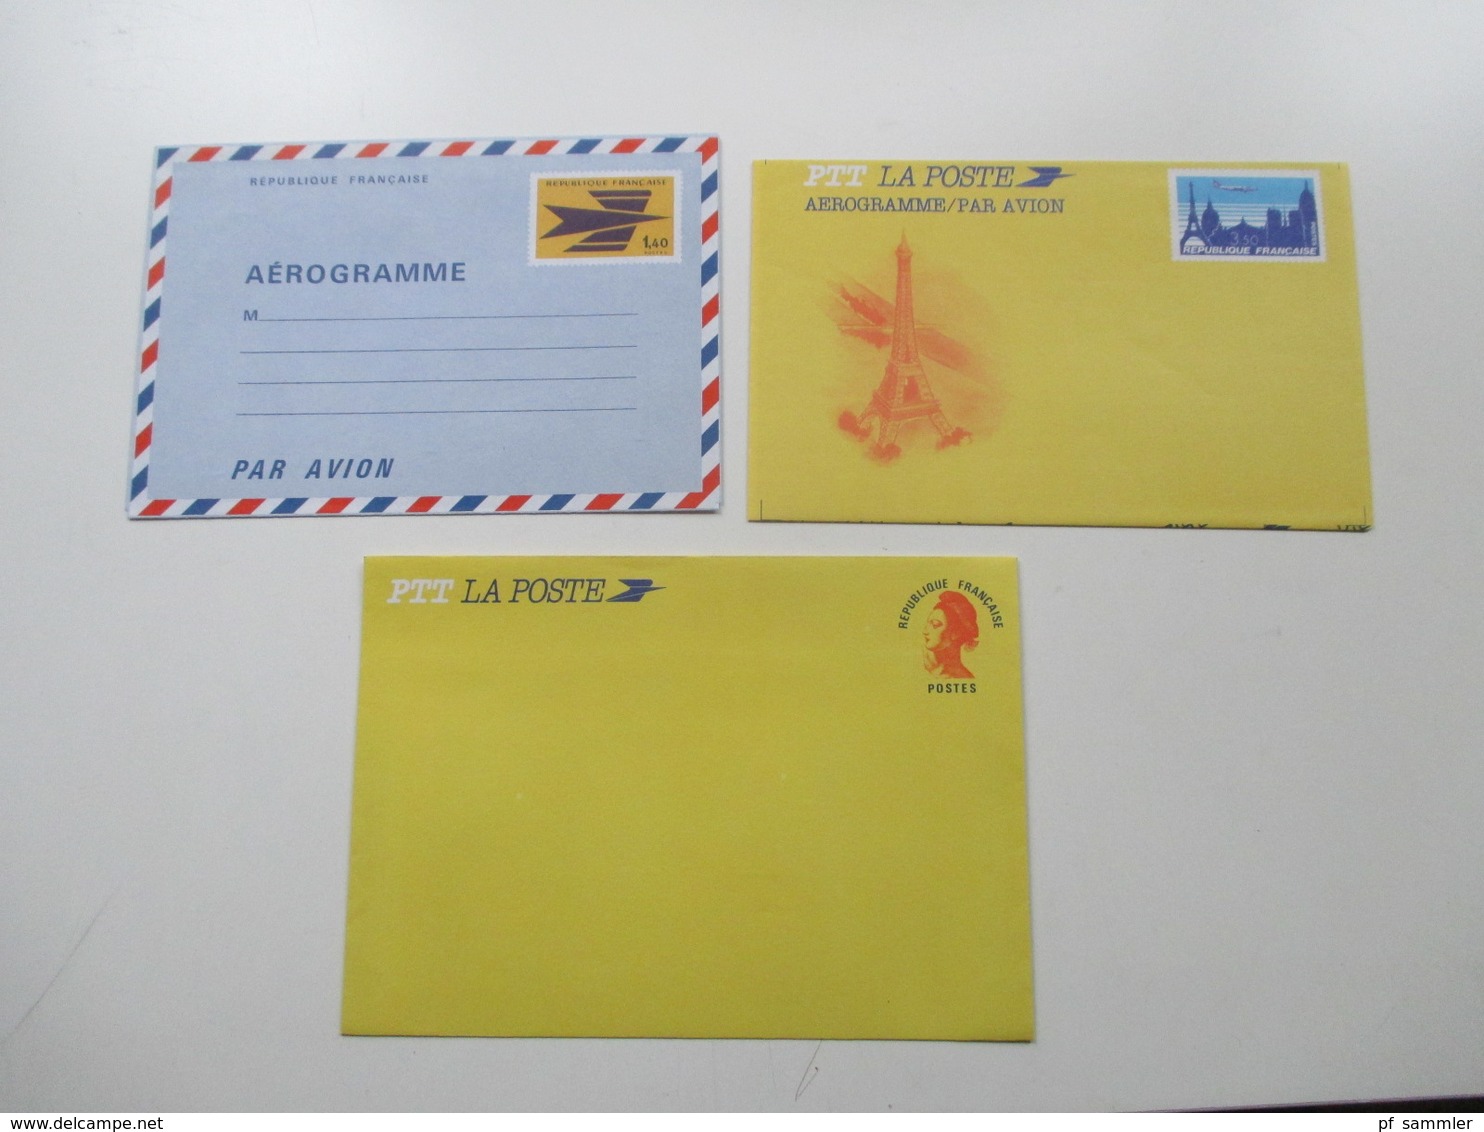 Frankreich Posten GA / Aerogramme Karten 70er Jahre - 2002 mit € GA insgesamt 75 Stück auch Umschläge. Ungebraucht